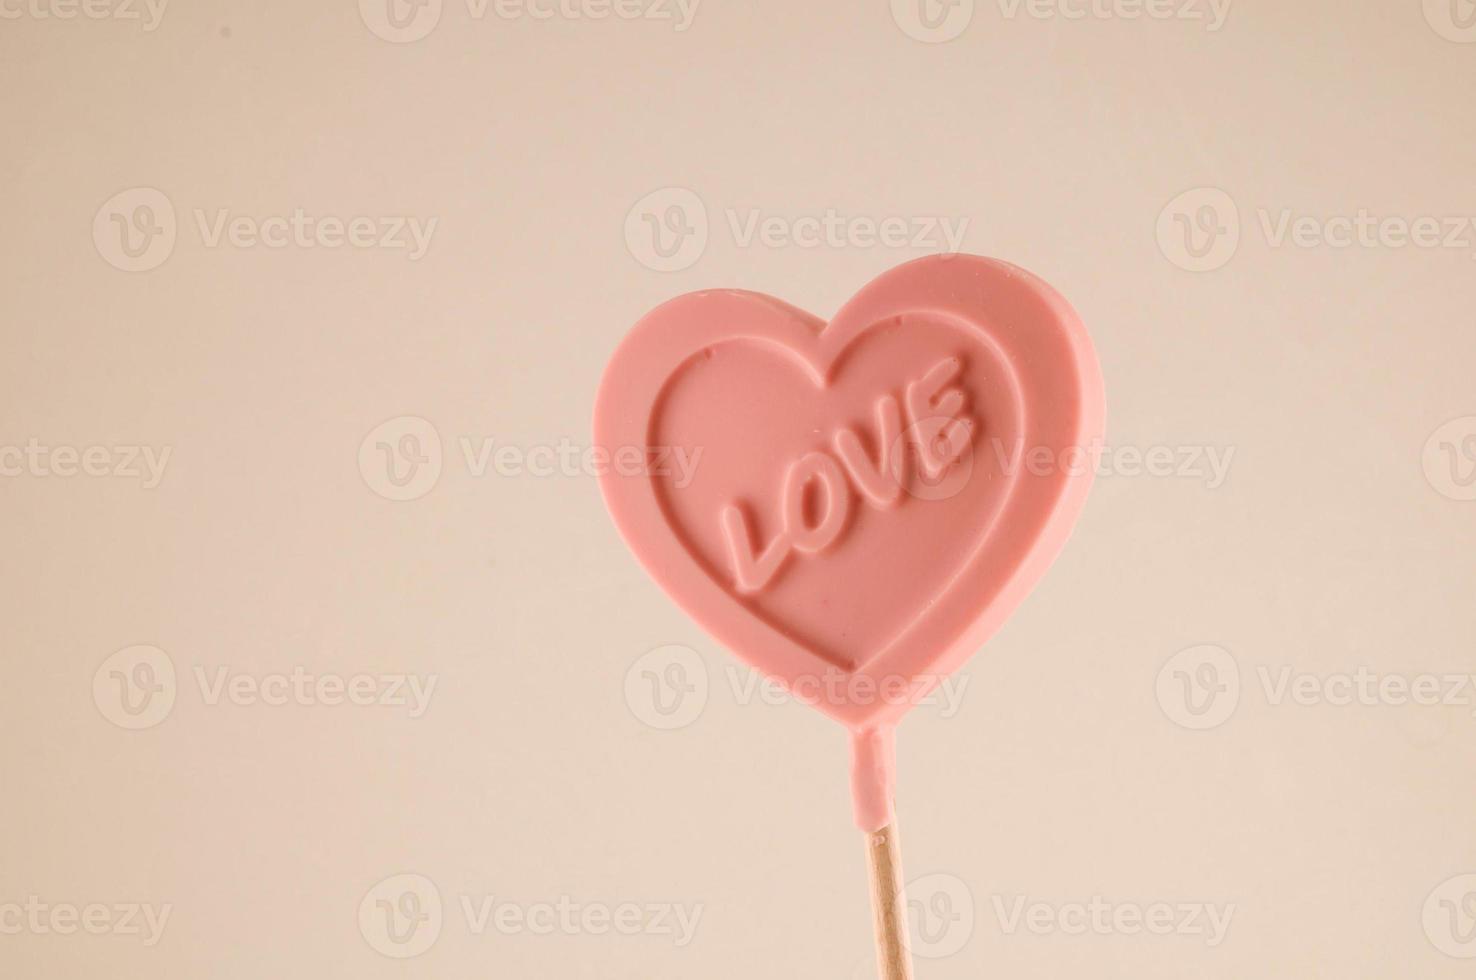 Love lollipop close up photo